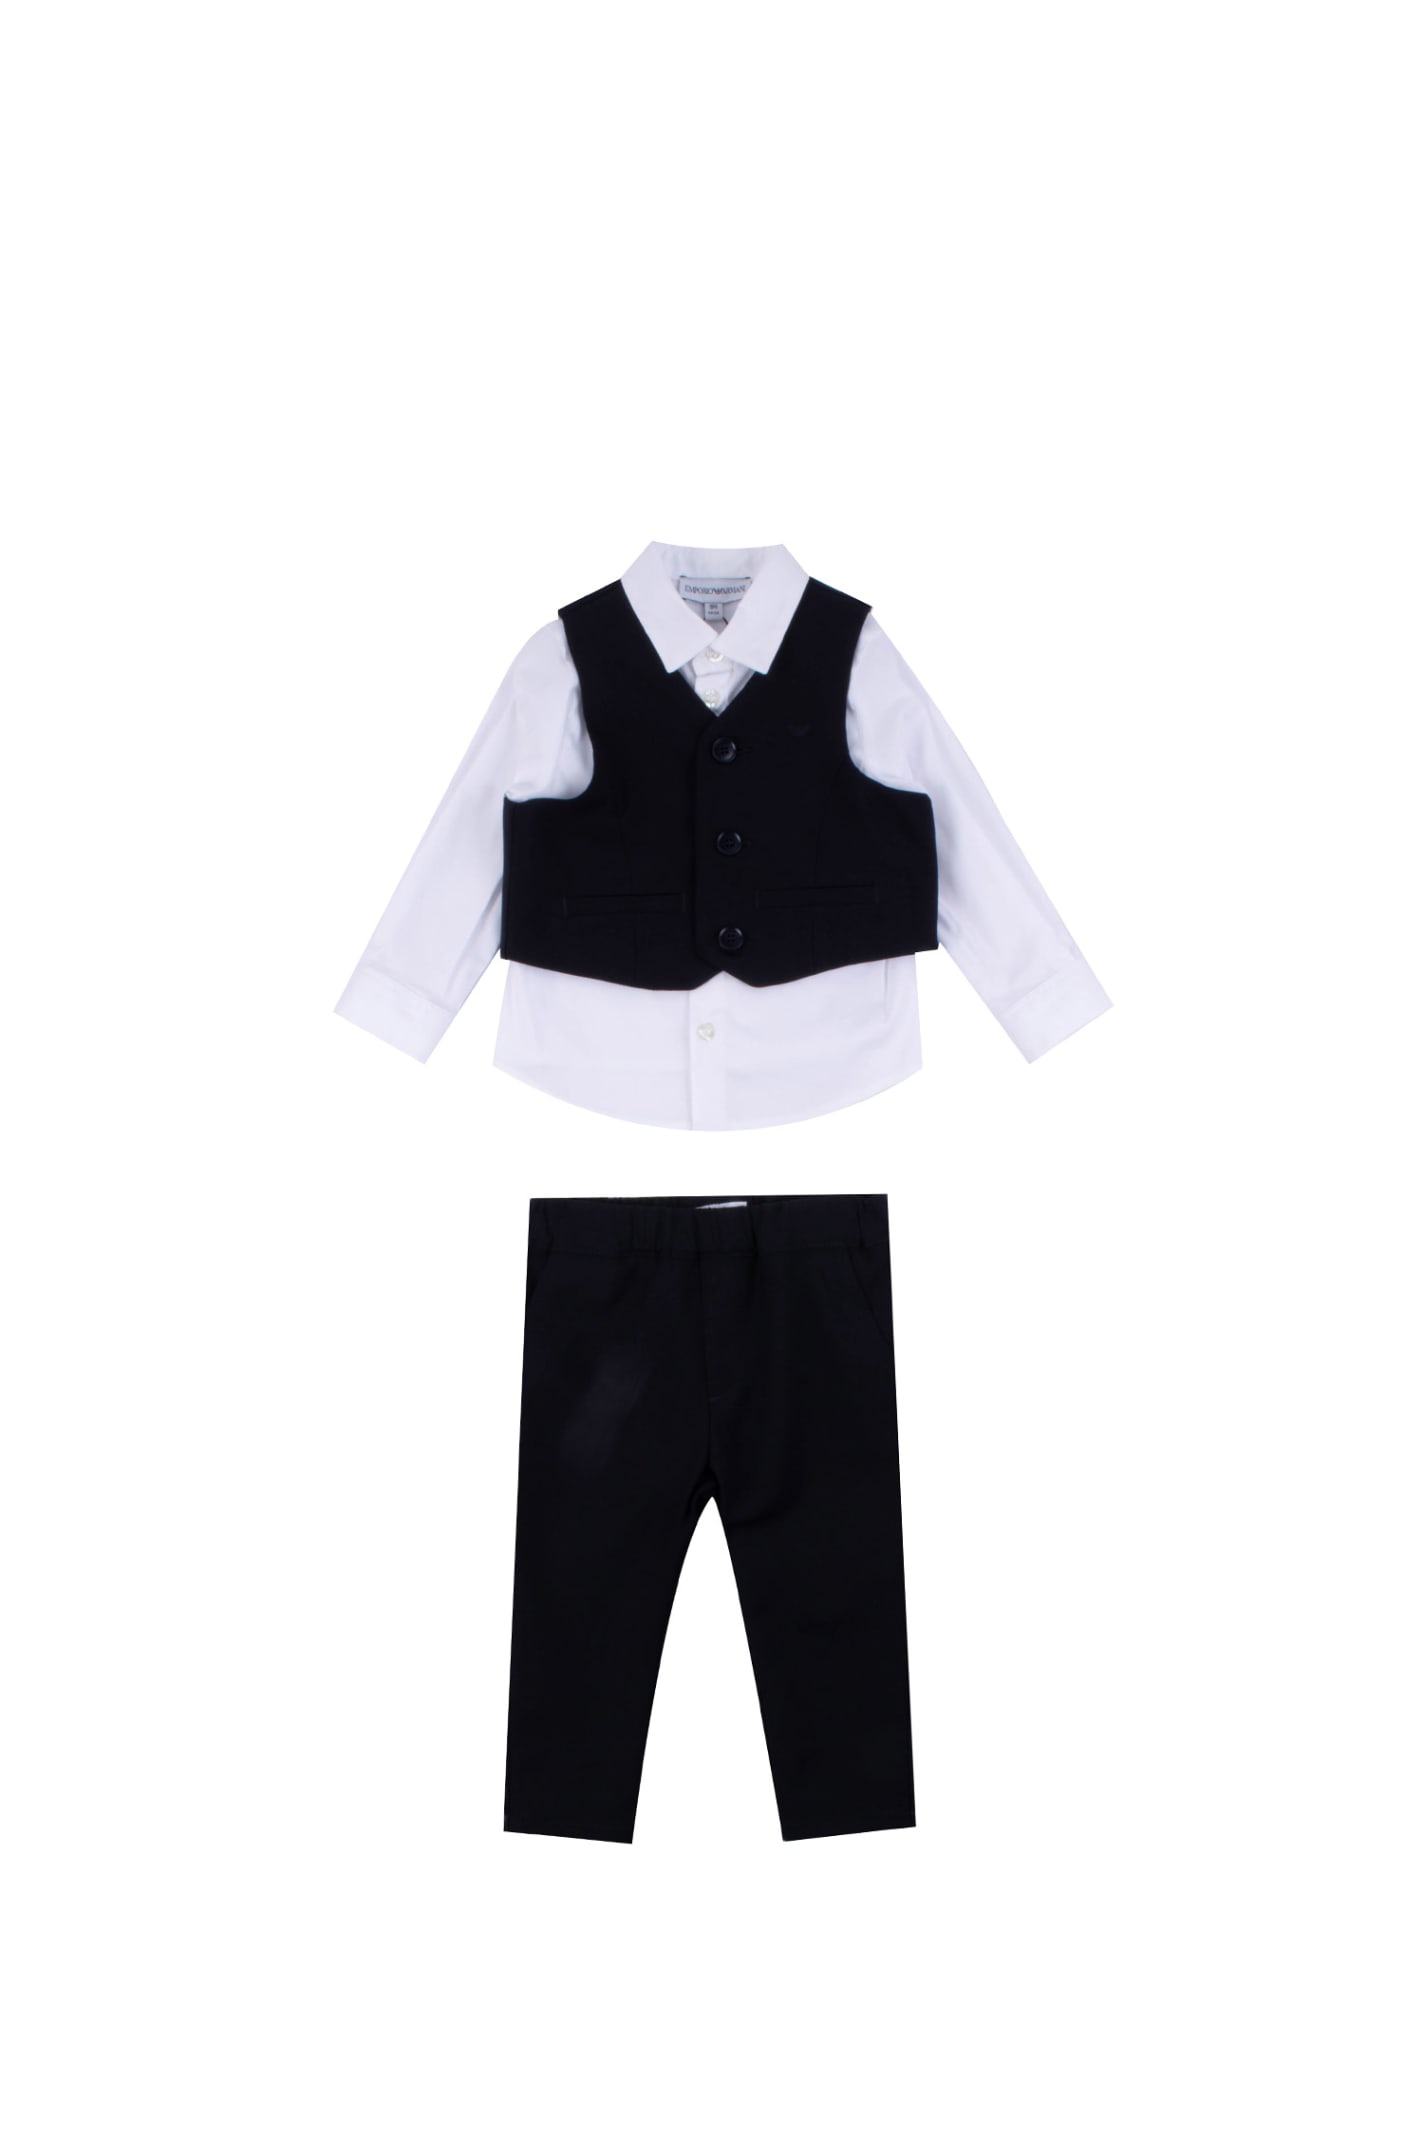 Emporio Armani Cotton Vest, Shirt And Pants